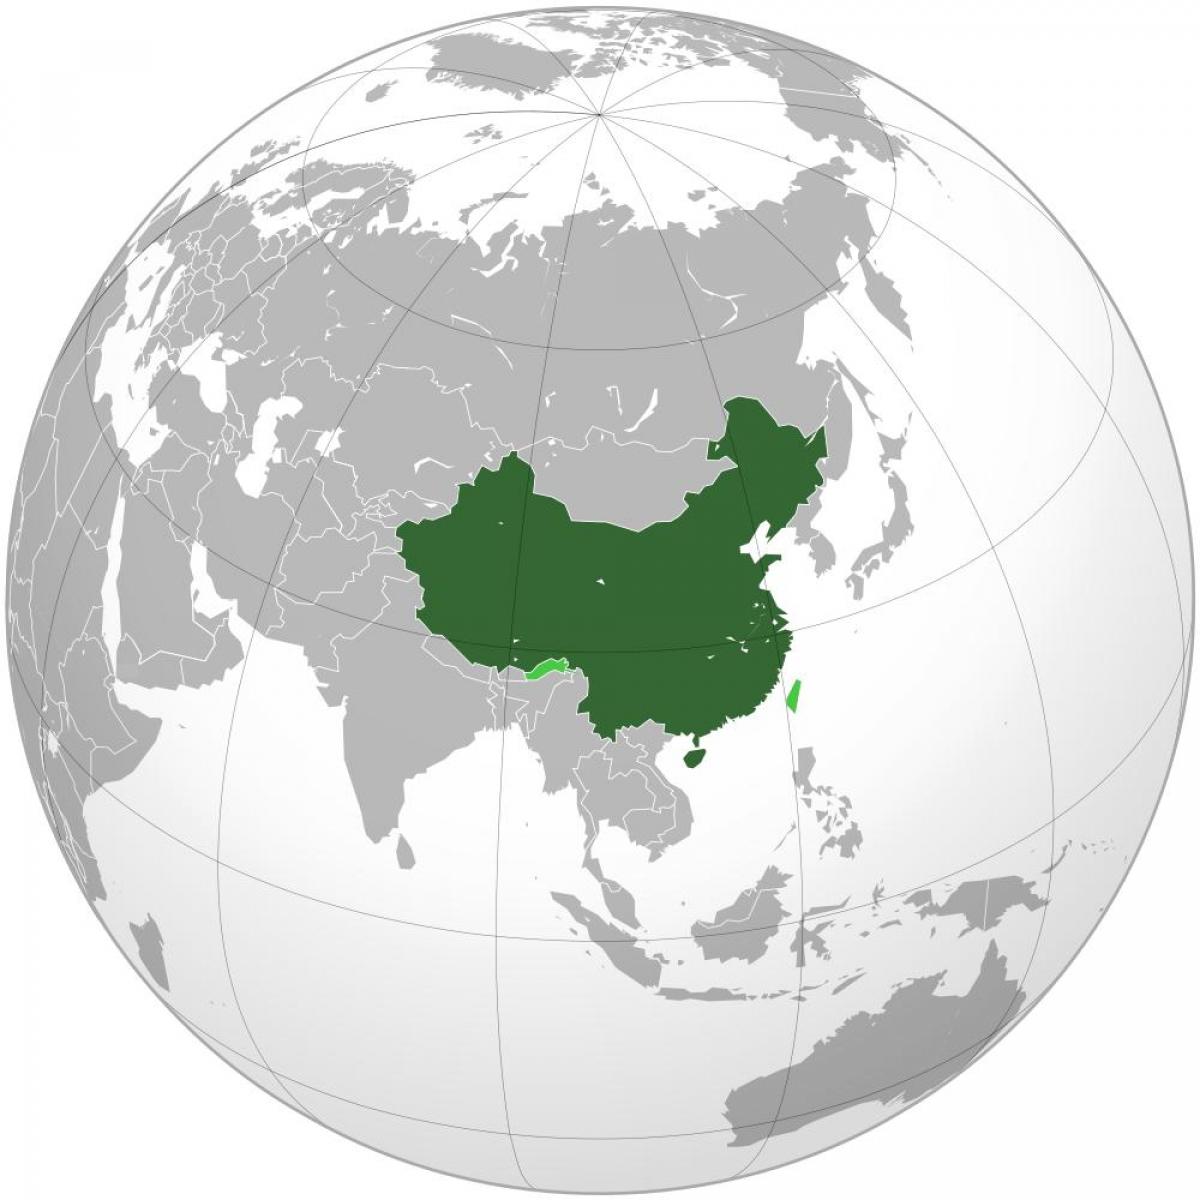 Chiny mapa świata